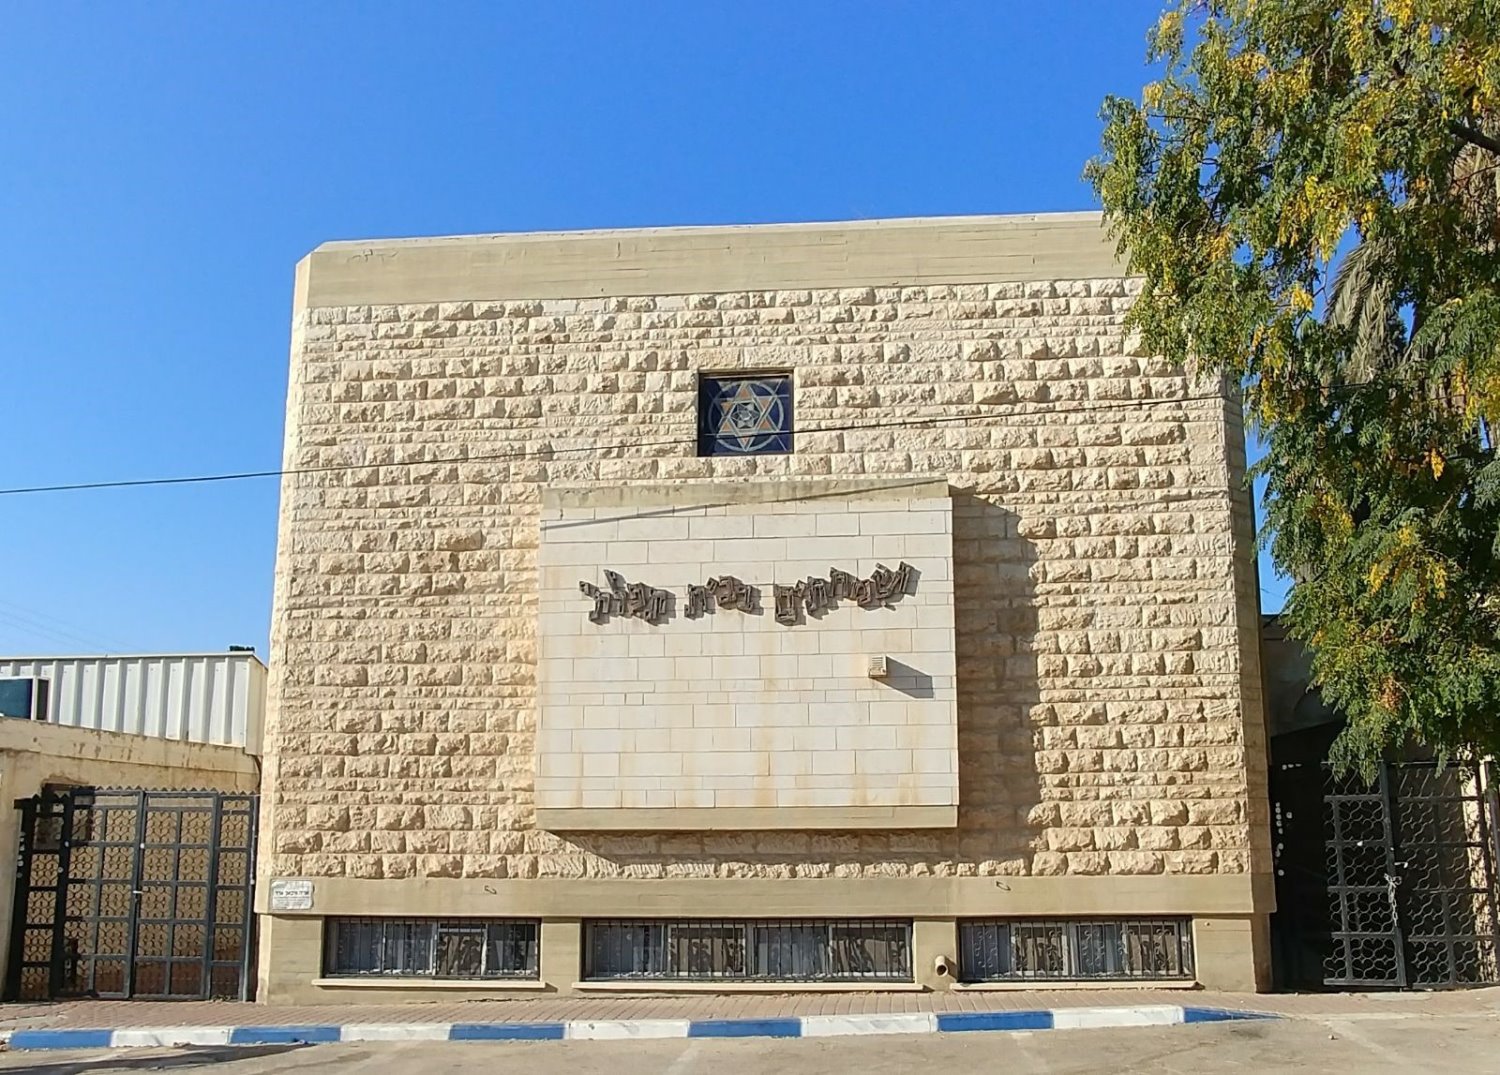 בית הכנסת הדסה ע"ש חללי הר הצופים. (צילום: נועה גבאי)